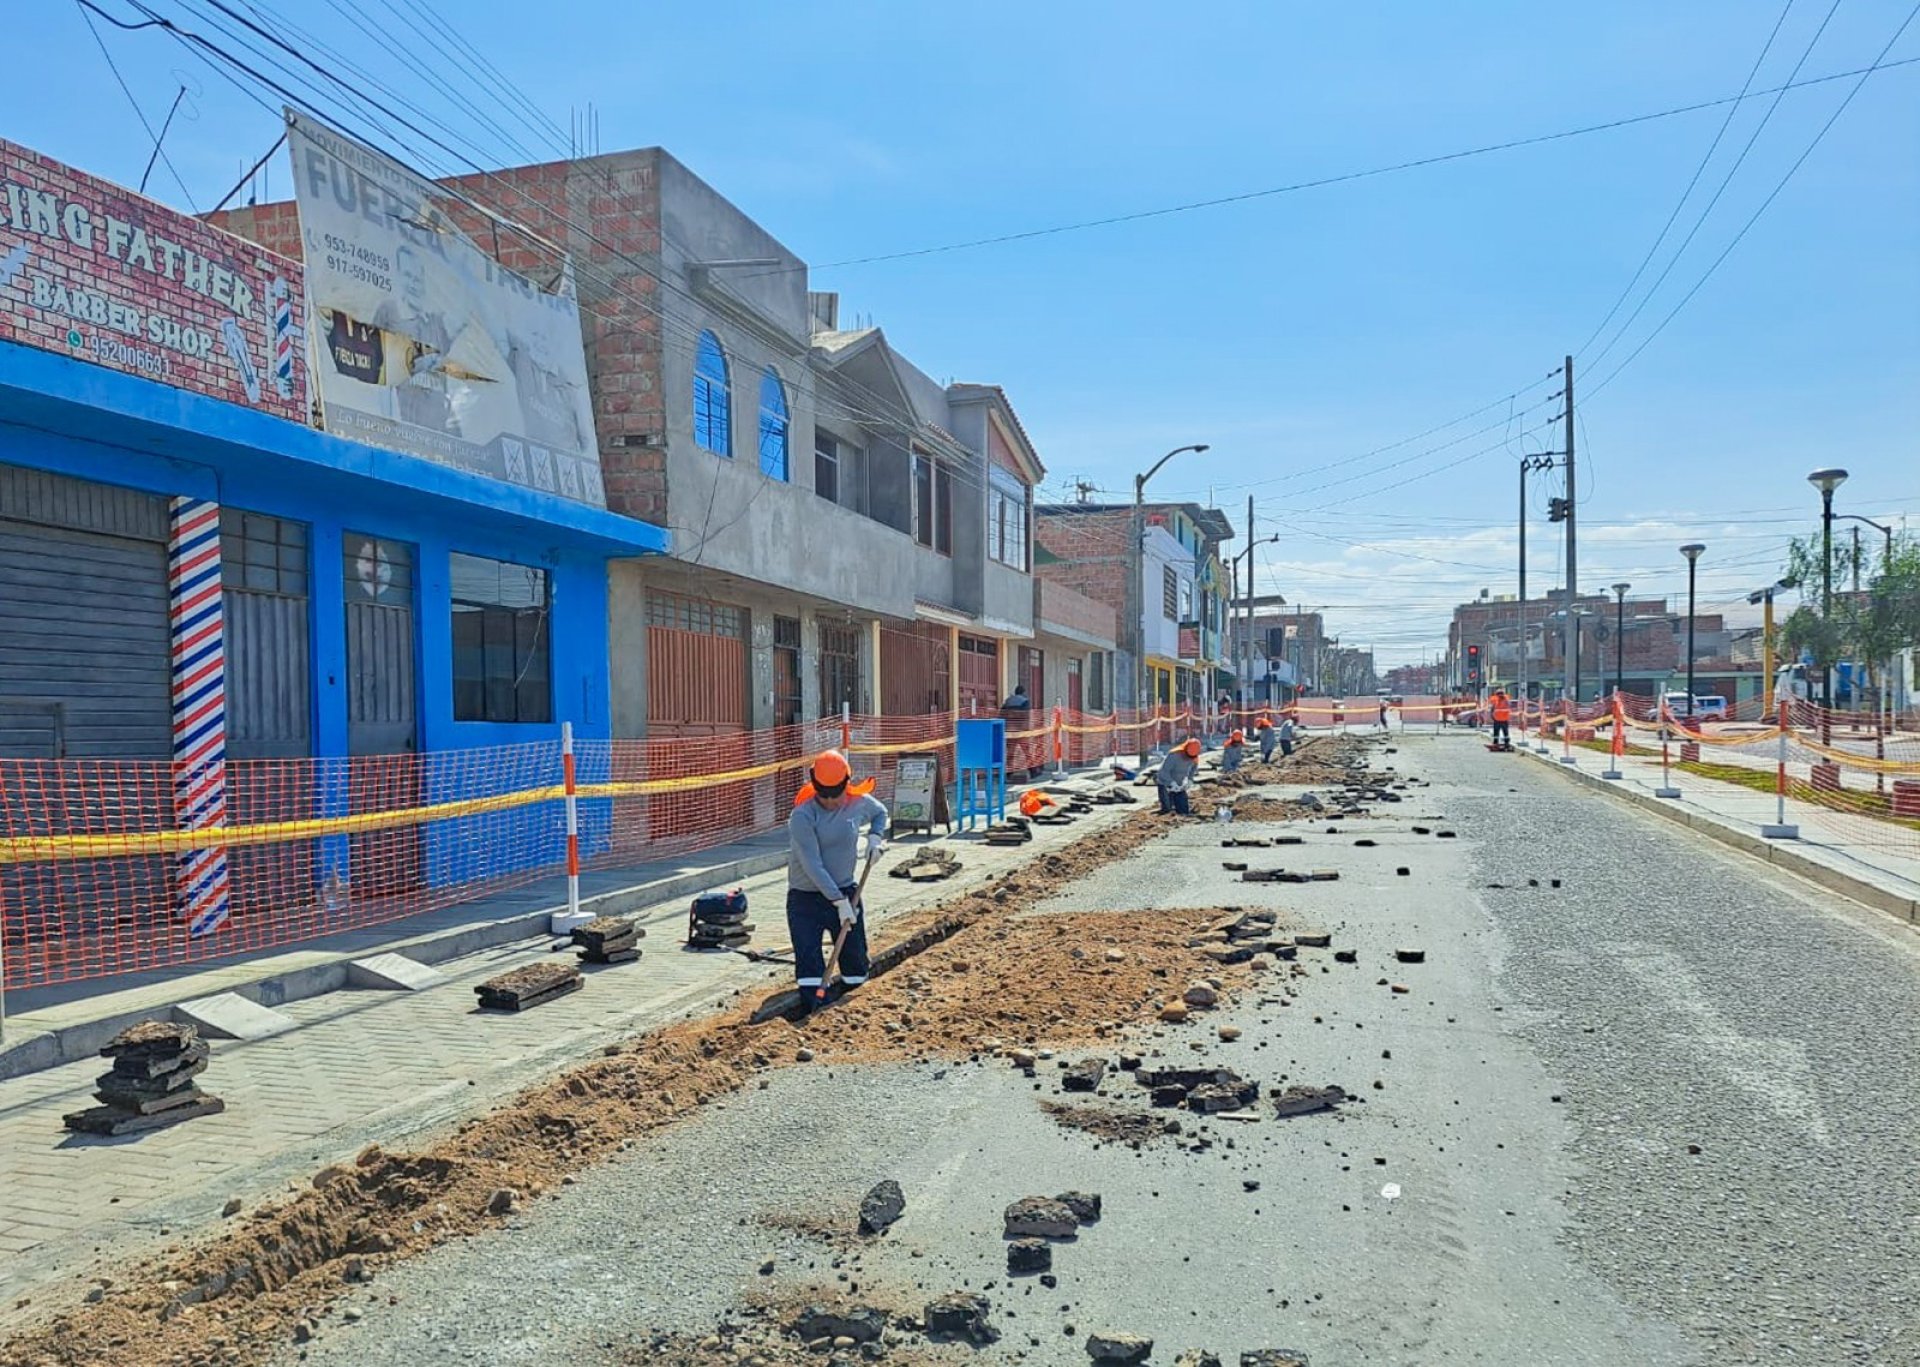 Masificacin de gas natural lleg a la regin Tacna.